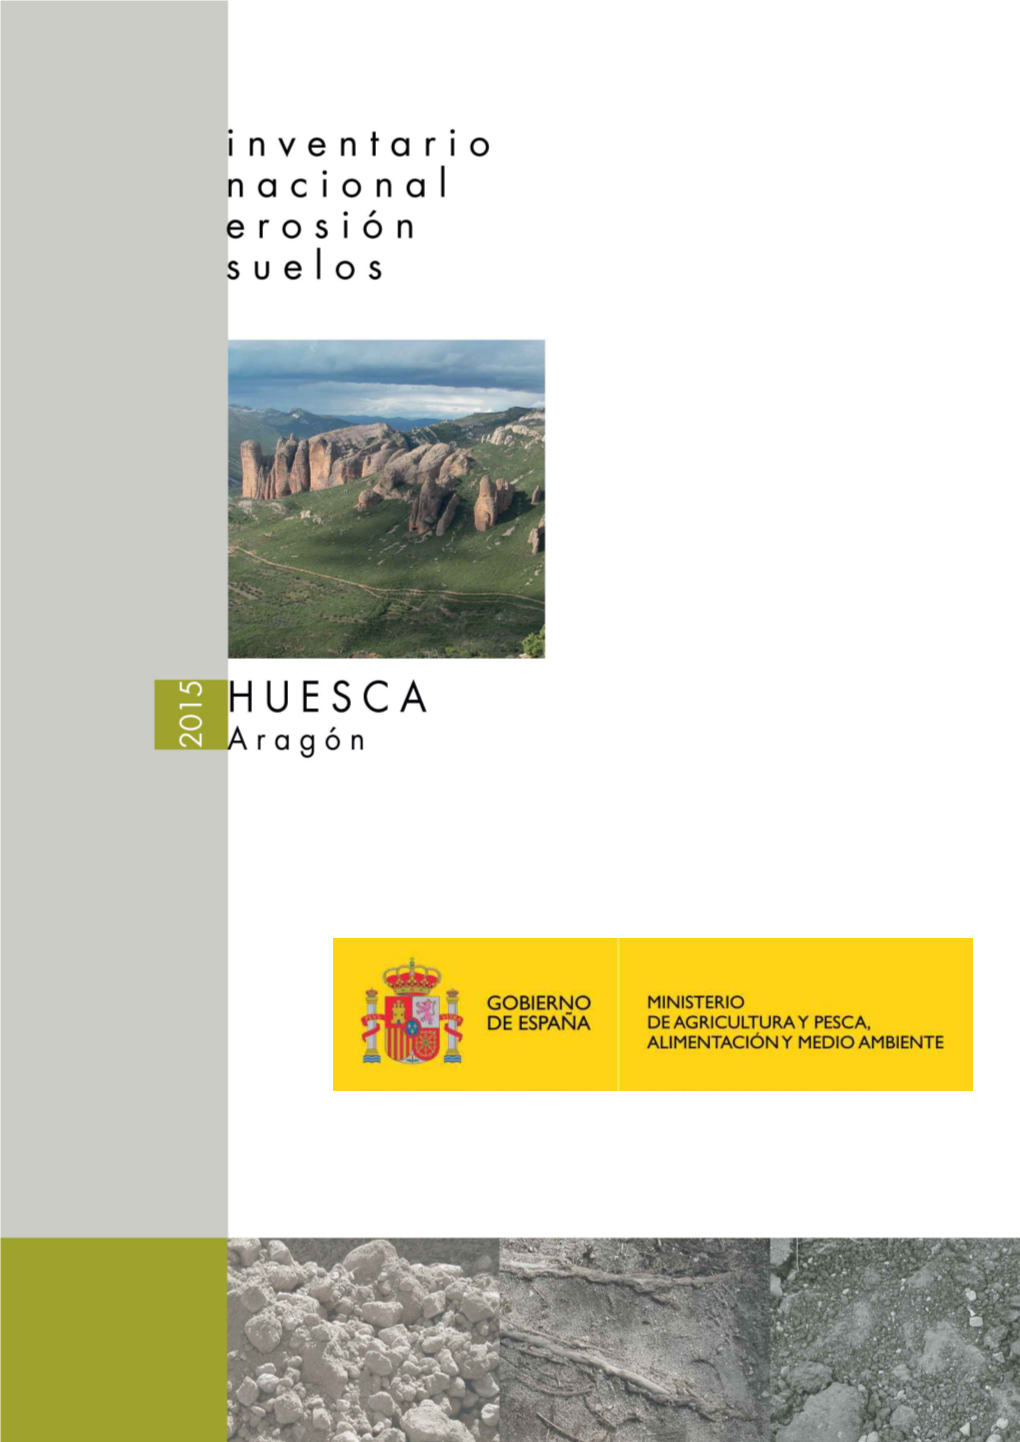 Memoria Del Inventario Nacional De Erosion De Suelos En Huesca